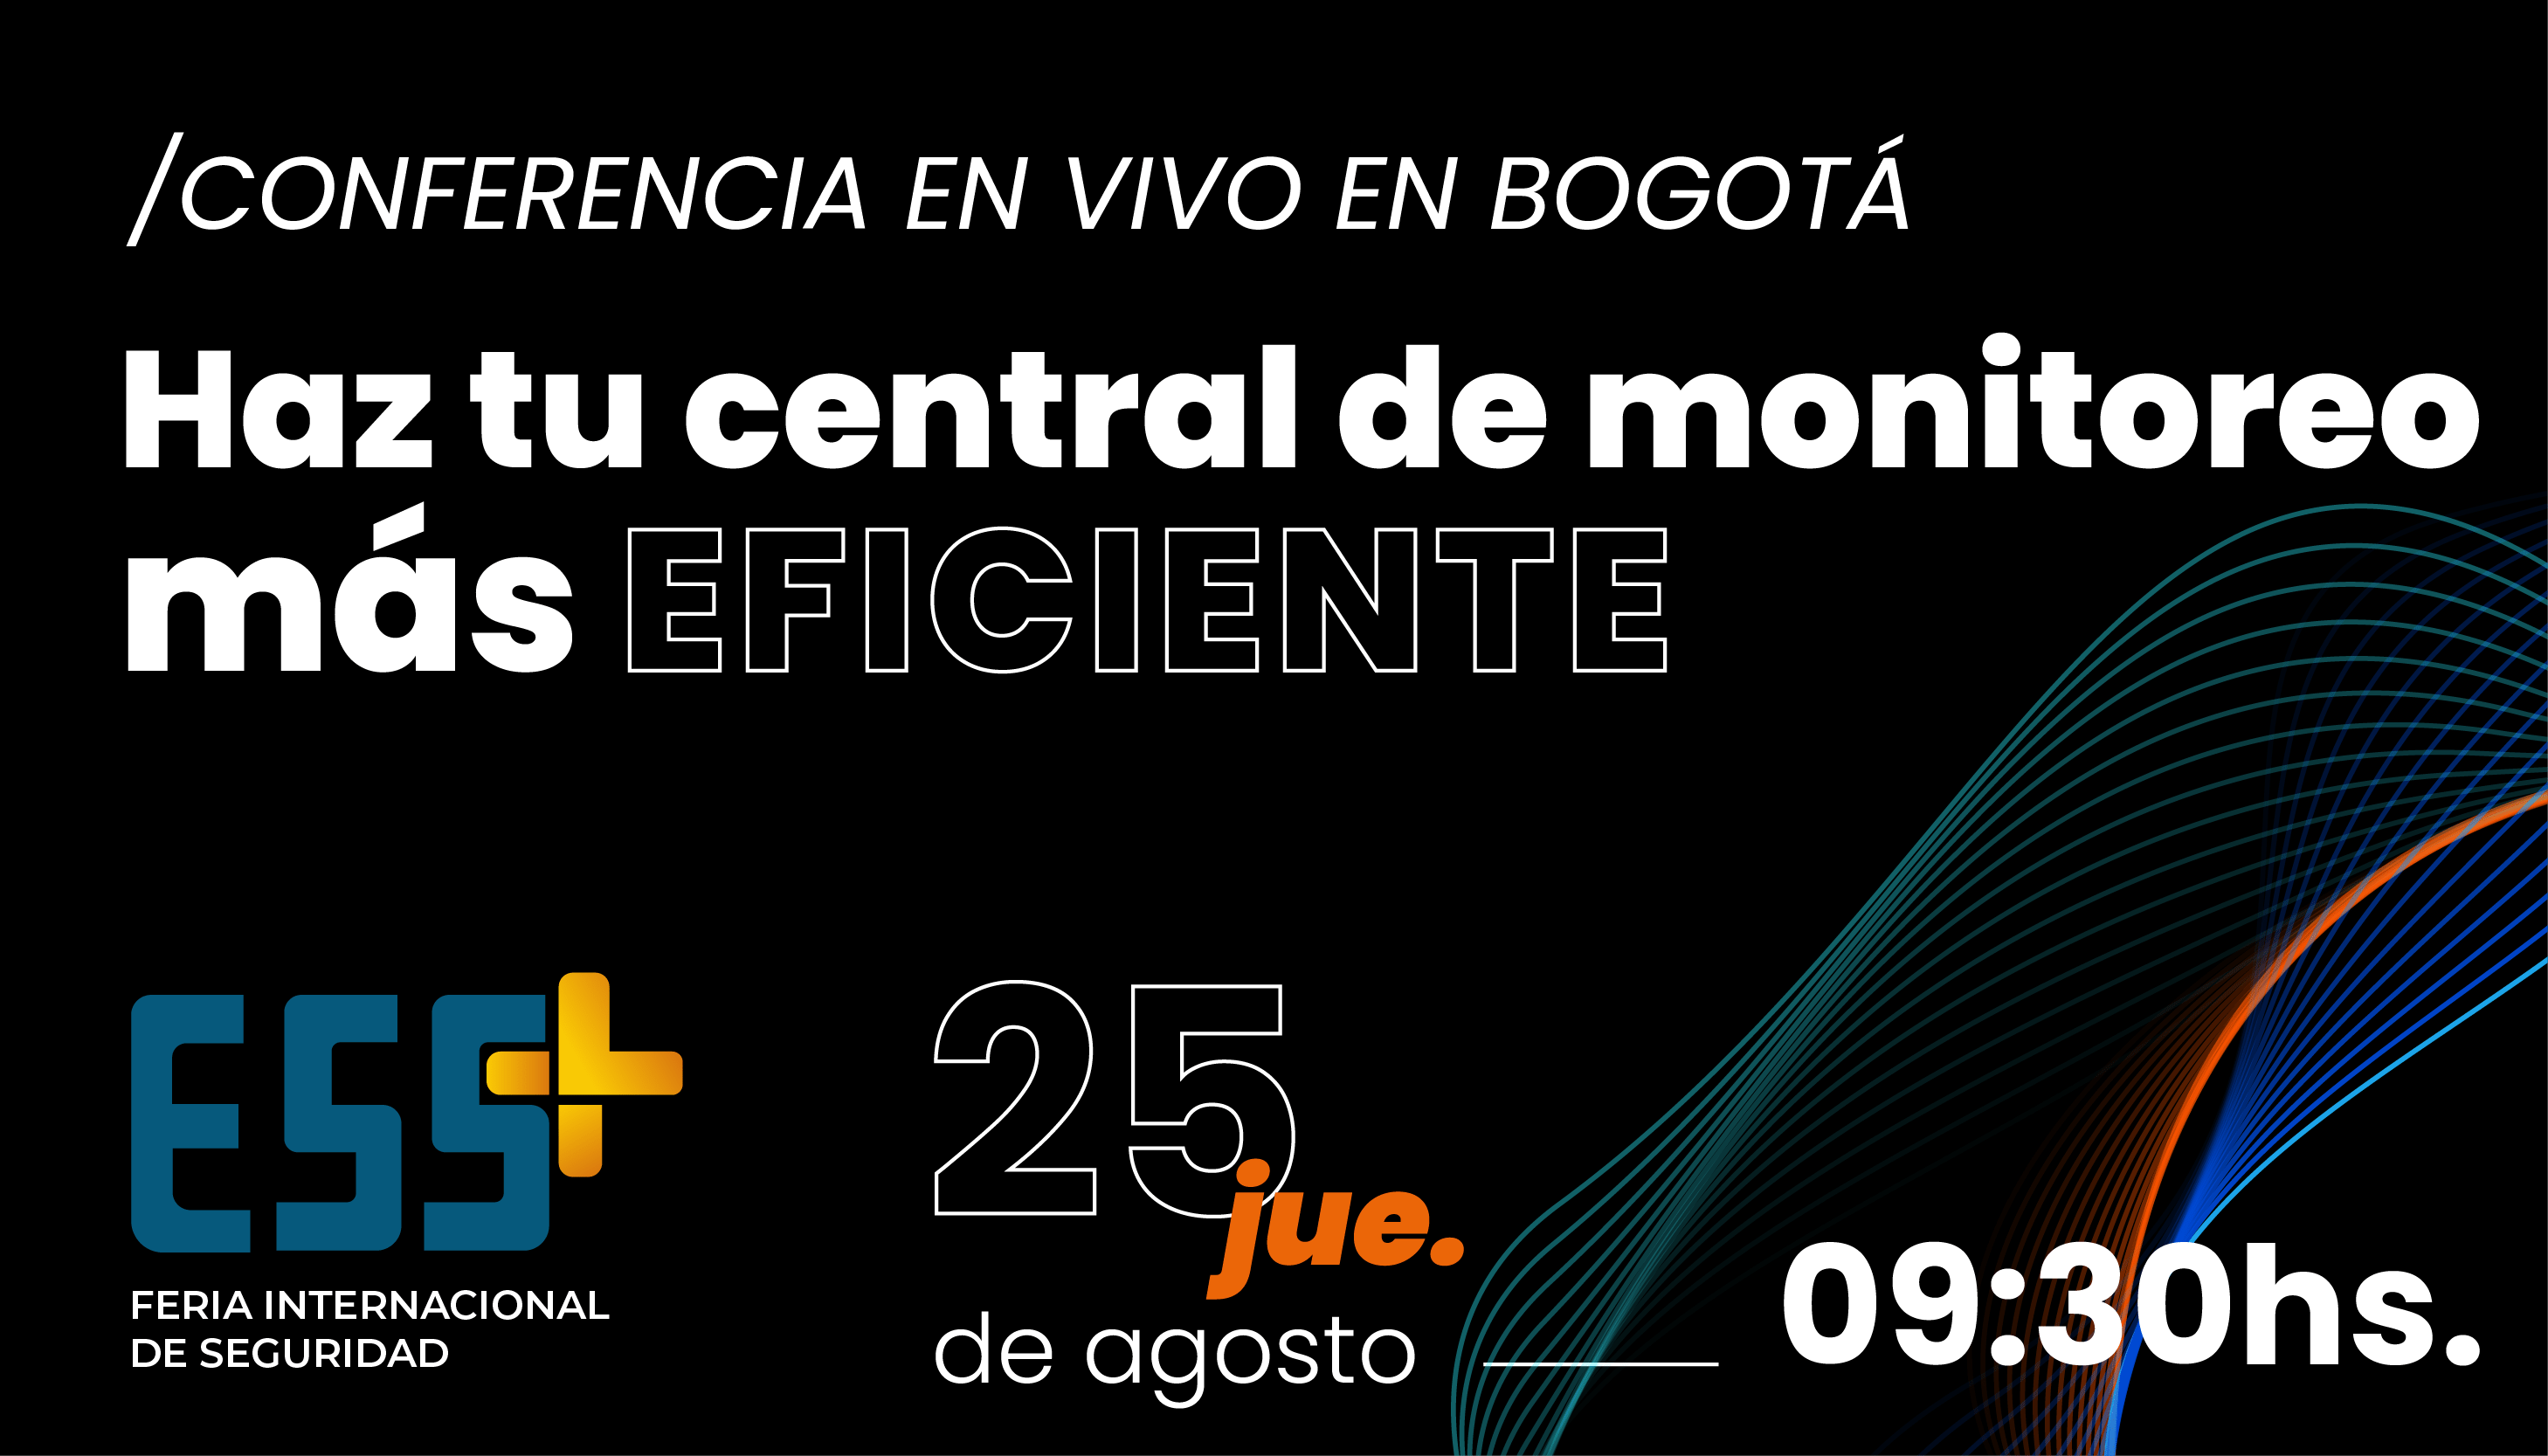 HAZ TU CENTRAL DE MONITOREO MÁS EFICIENTE - CONFERENCIA EN BOGOTÁ